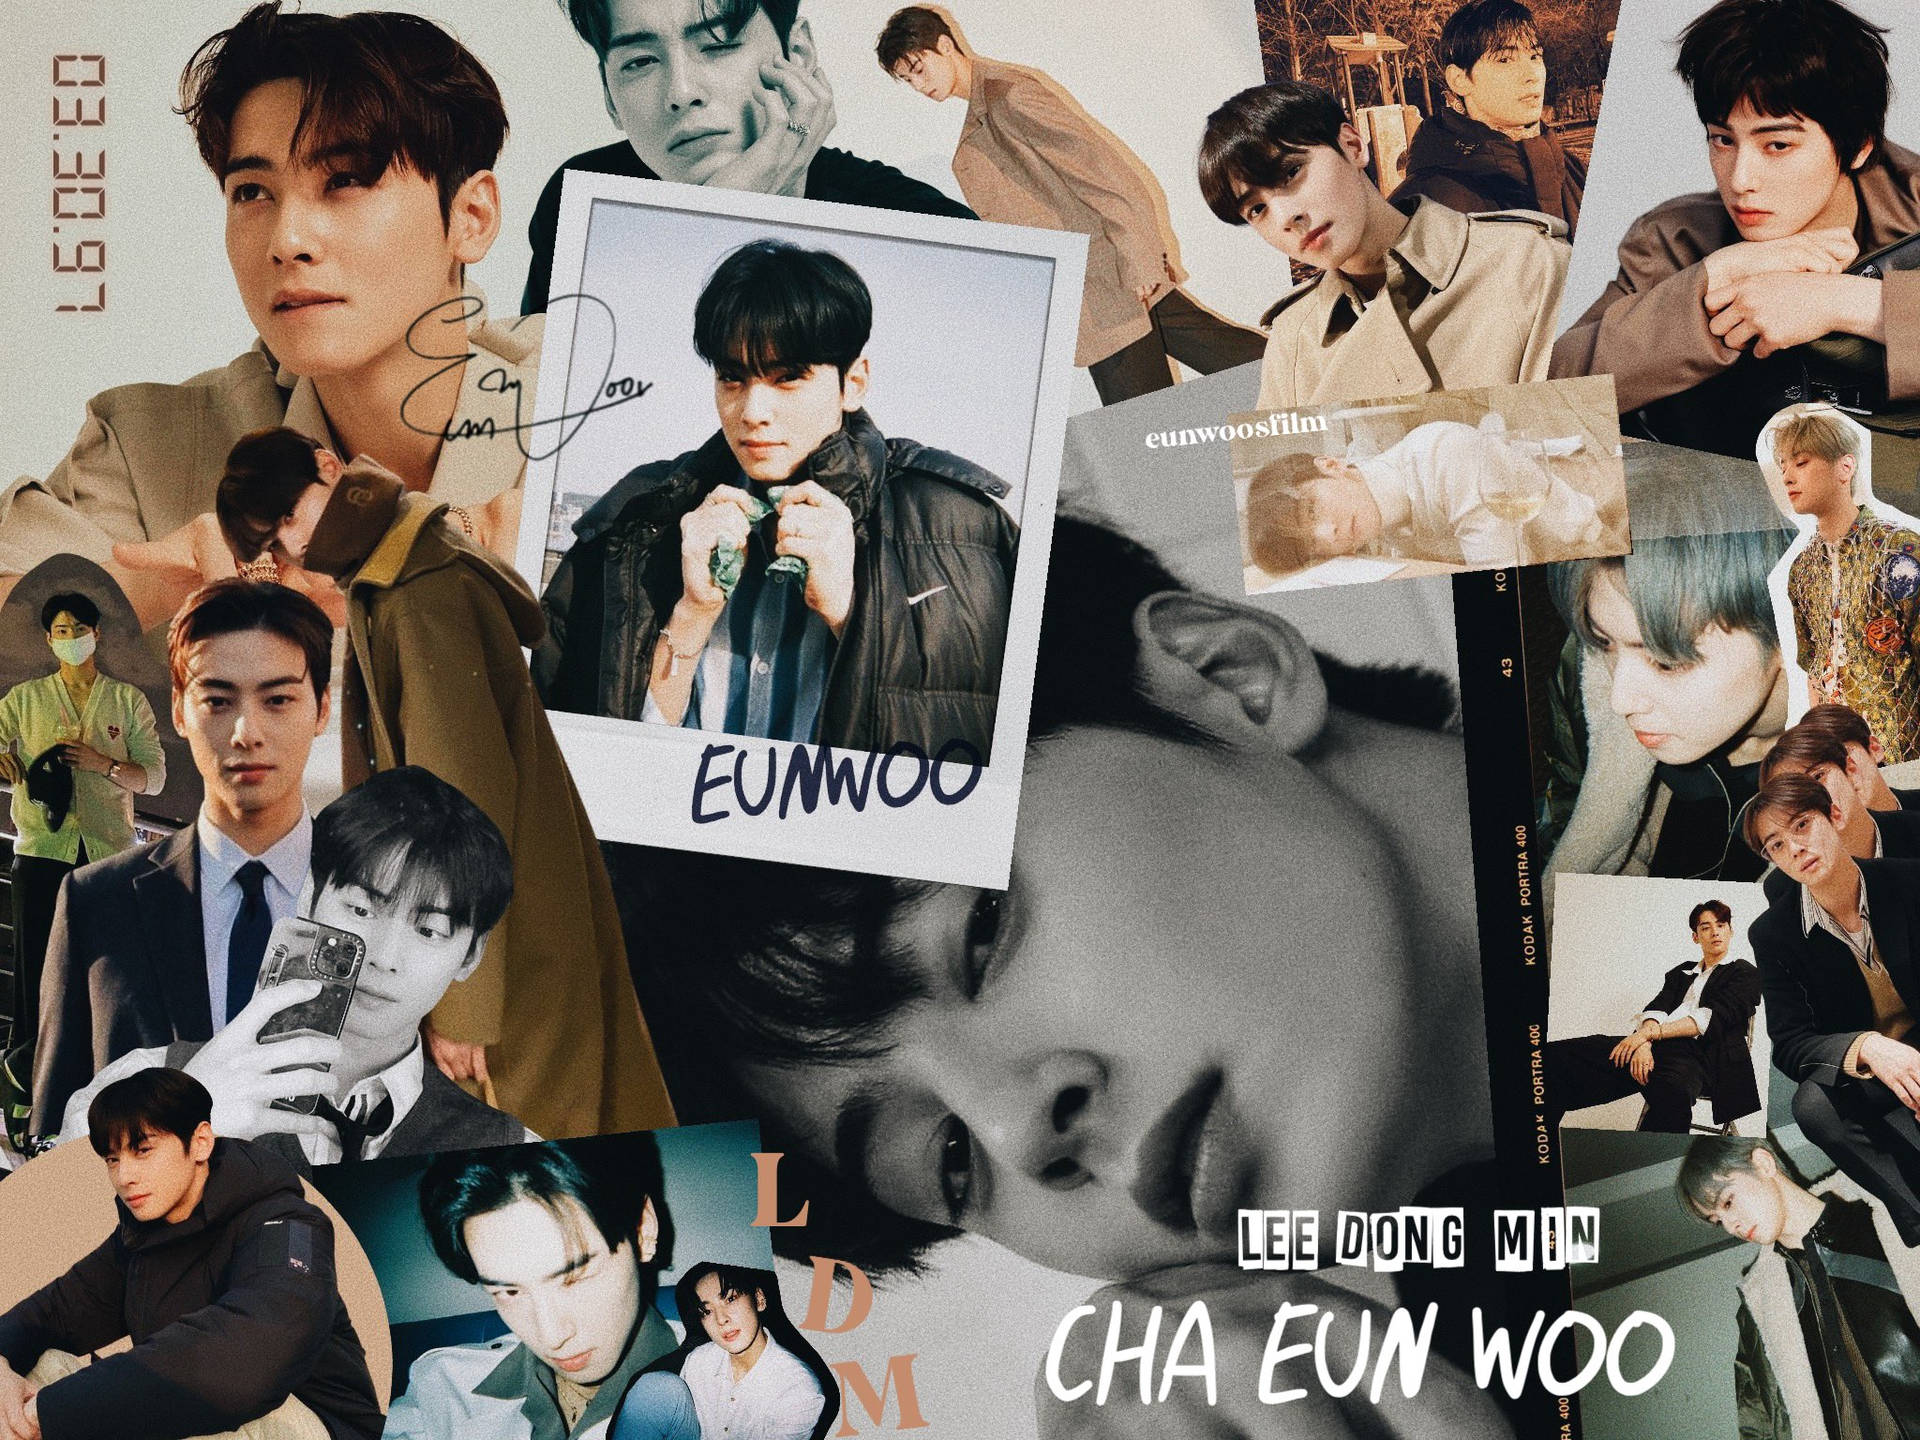 Free Cha Eun Woo Wallpaper Downloads, [100+] Cha Eun Woo Wallpapers for  FREE 